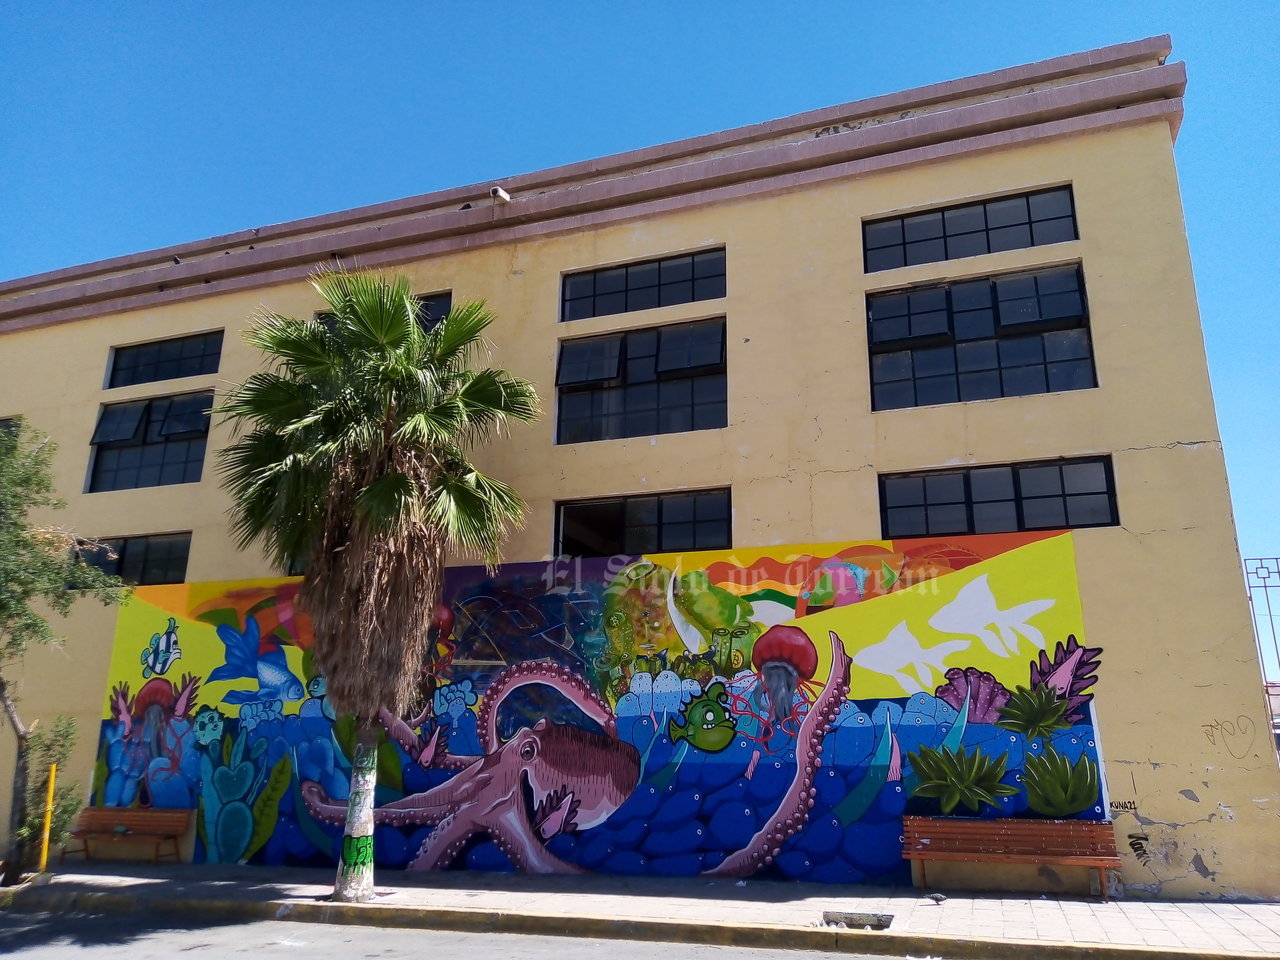 Artistas urbanos pintan murales en la Antigua Harinera, edificio de Torreón